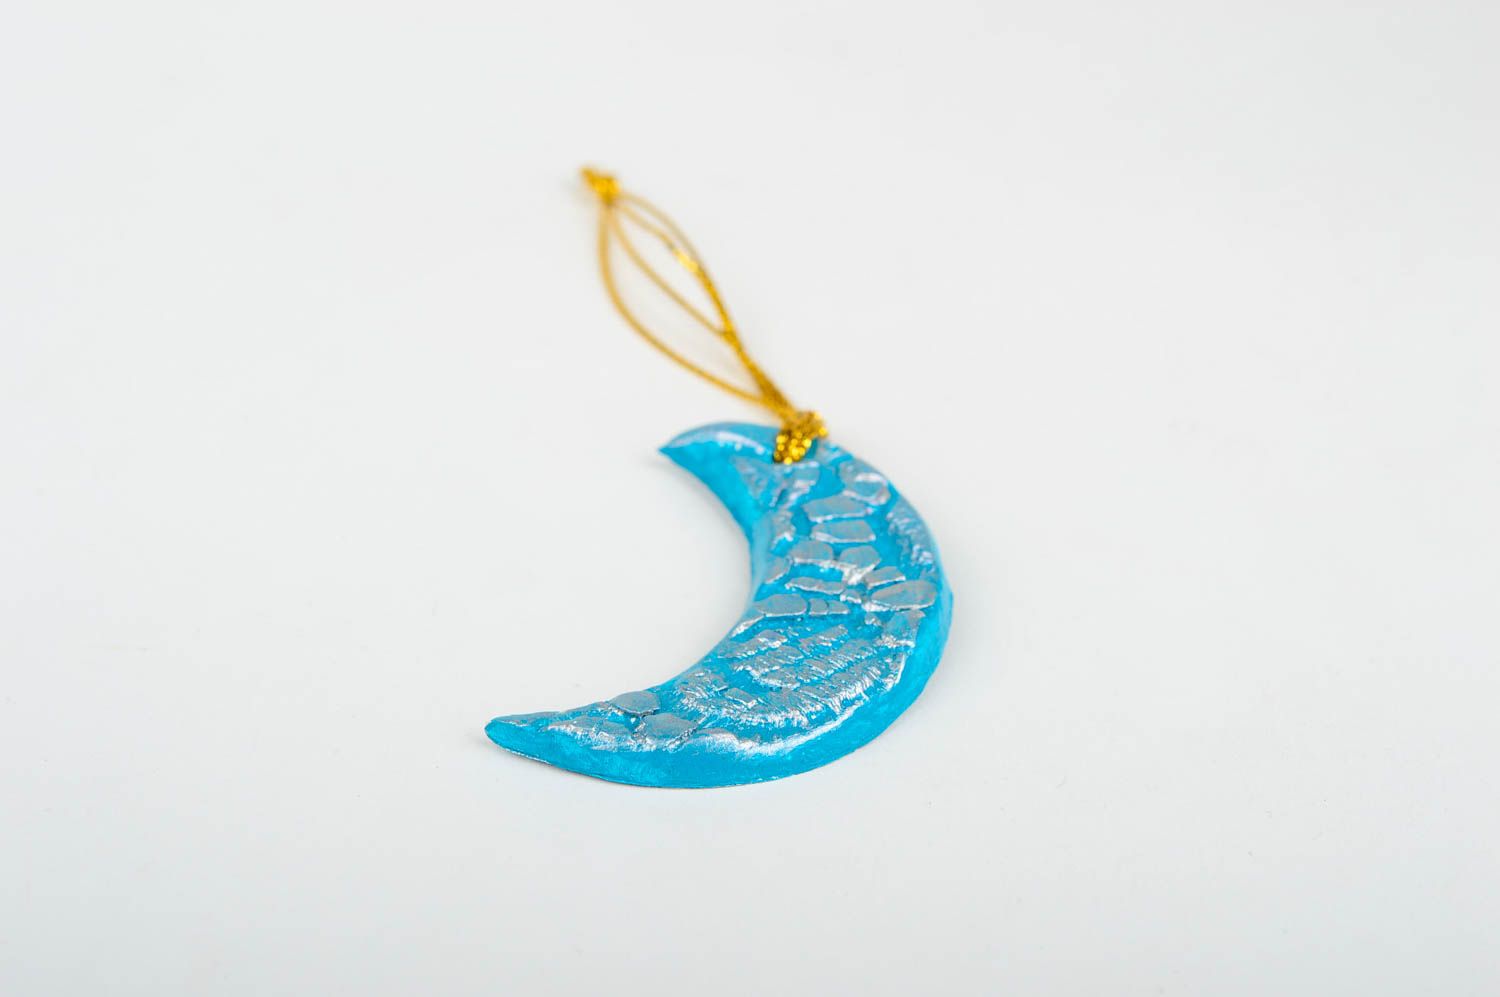 Игрушка на елку handmade декор для дома игрушка из глины расписная Месяц голубой фото 3